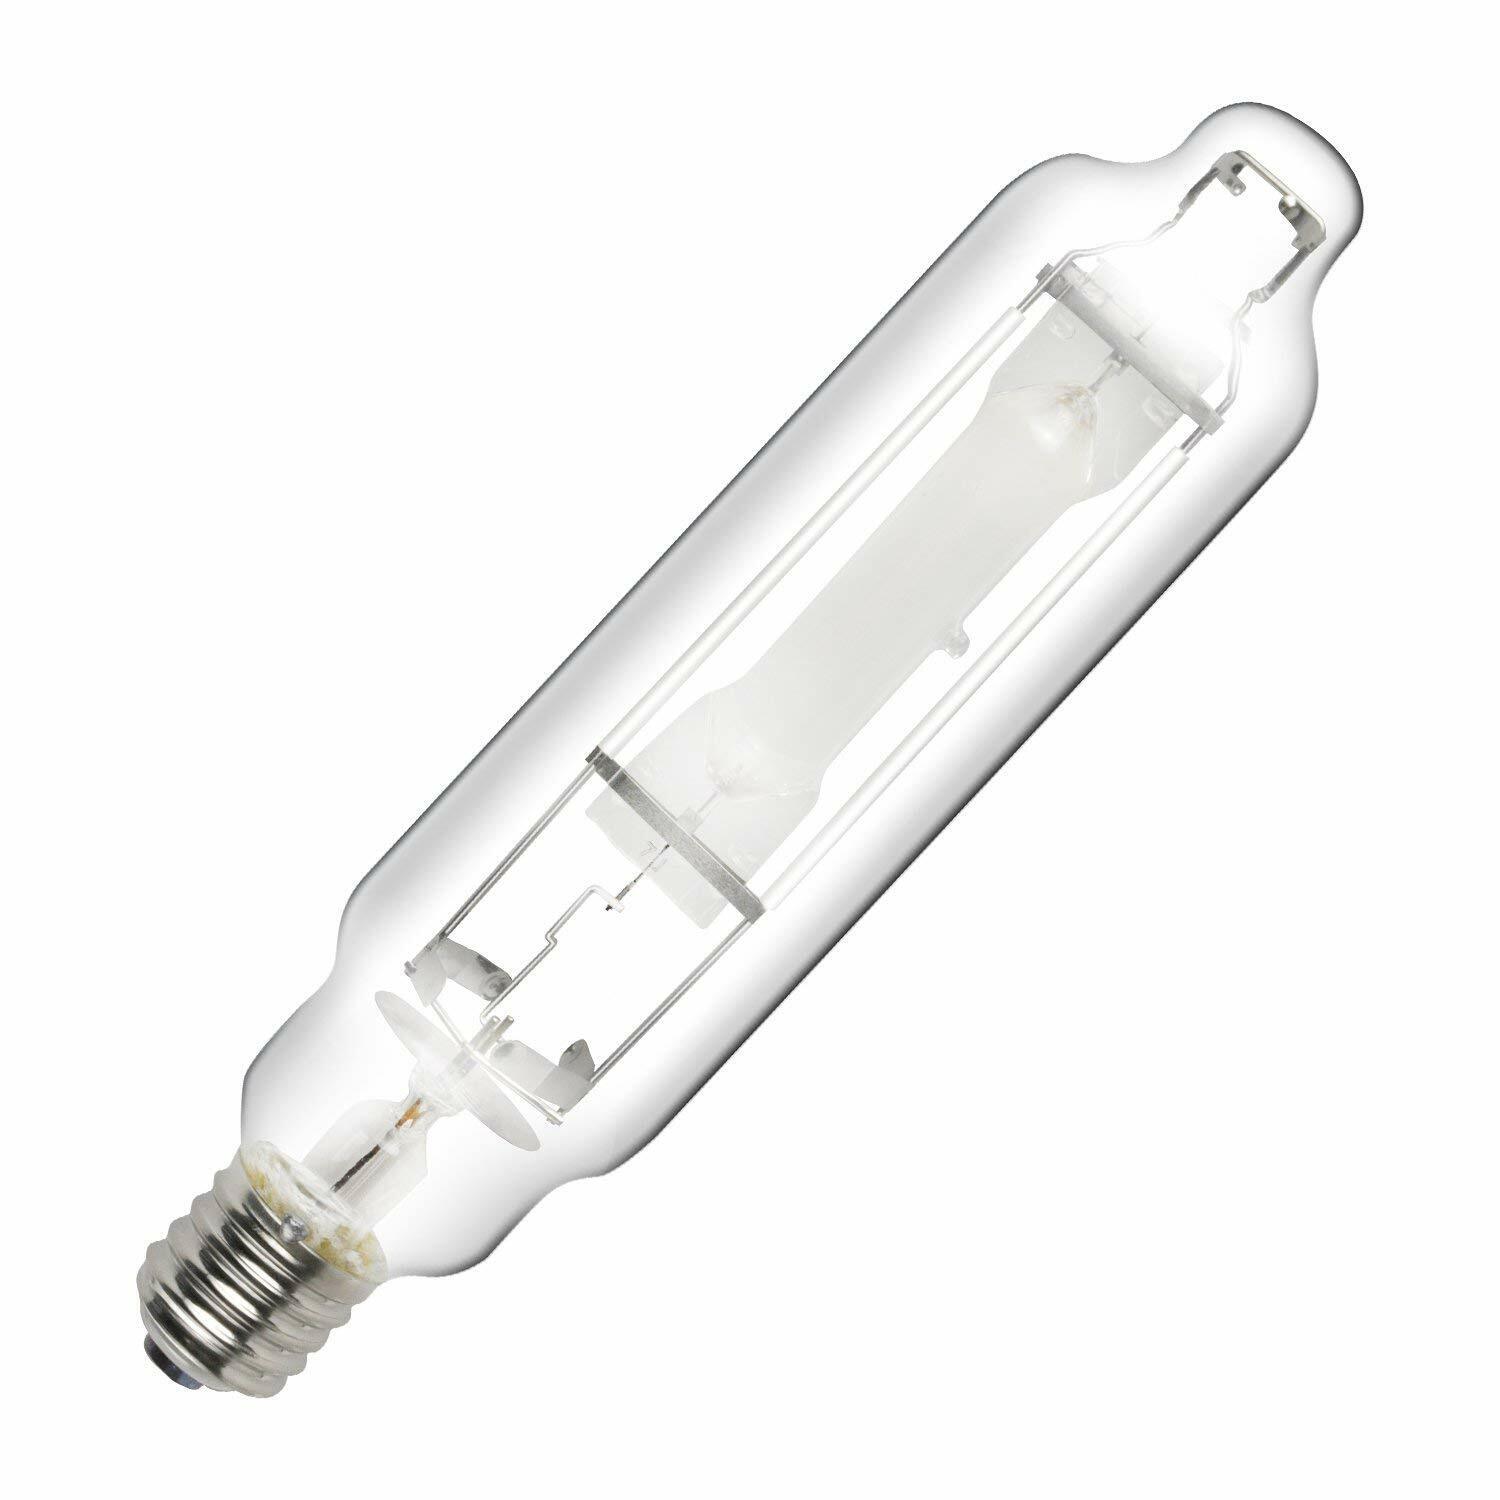 1/2/4/6-Pack iPower 600W Metal Halide MH Grow Light Bulb Lamp High PAR 6000K